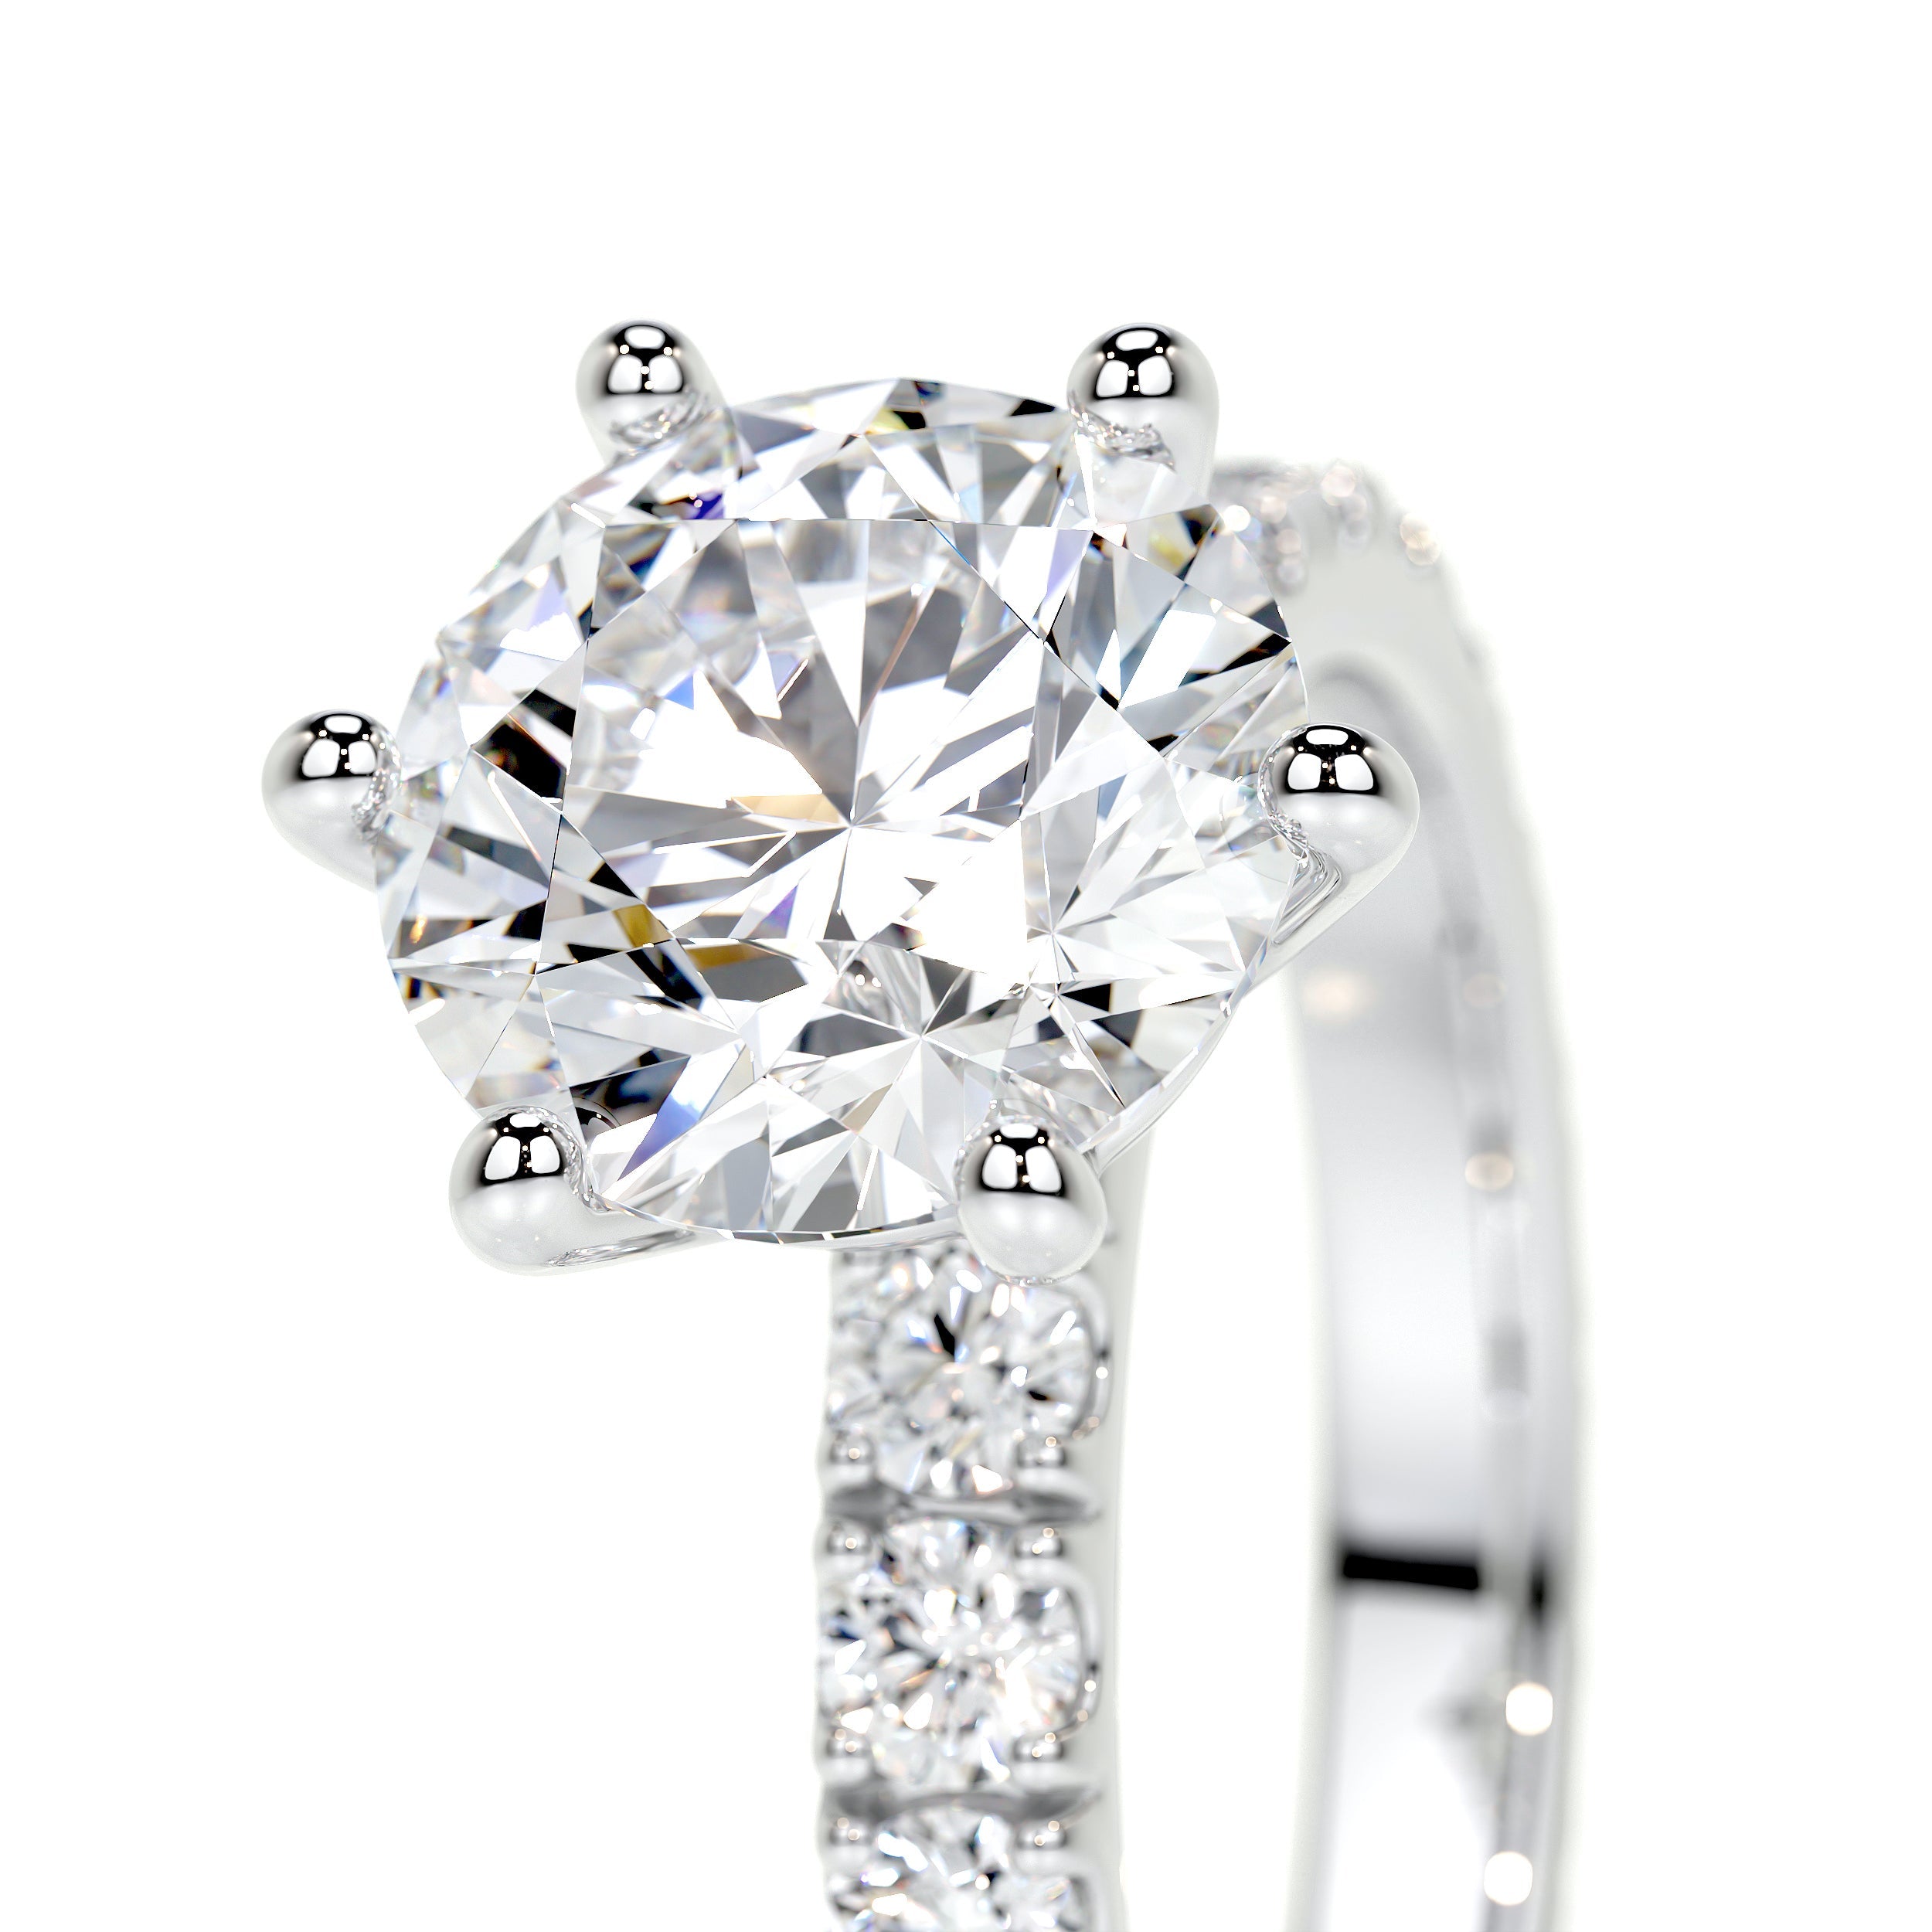 Jane Lab Grown Diamond Ring   (2.25 Carat) -14K White Gold